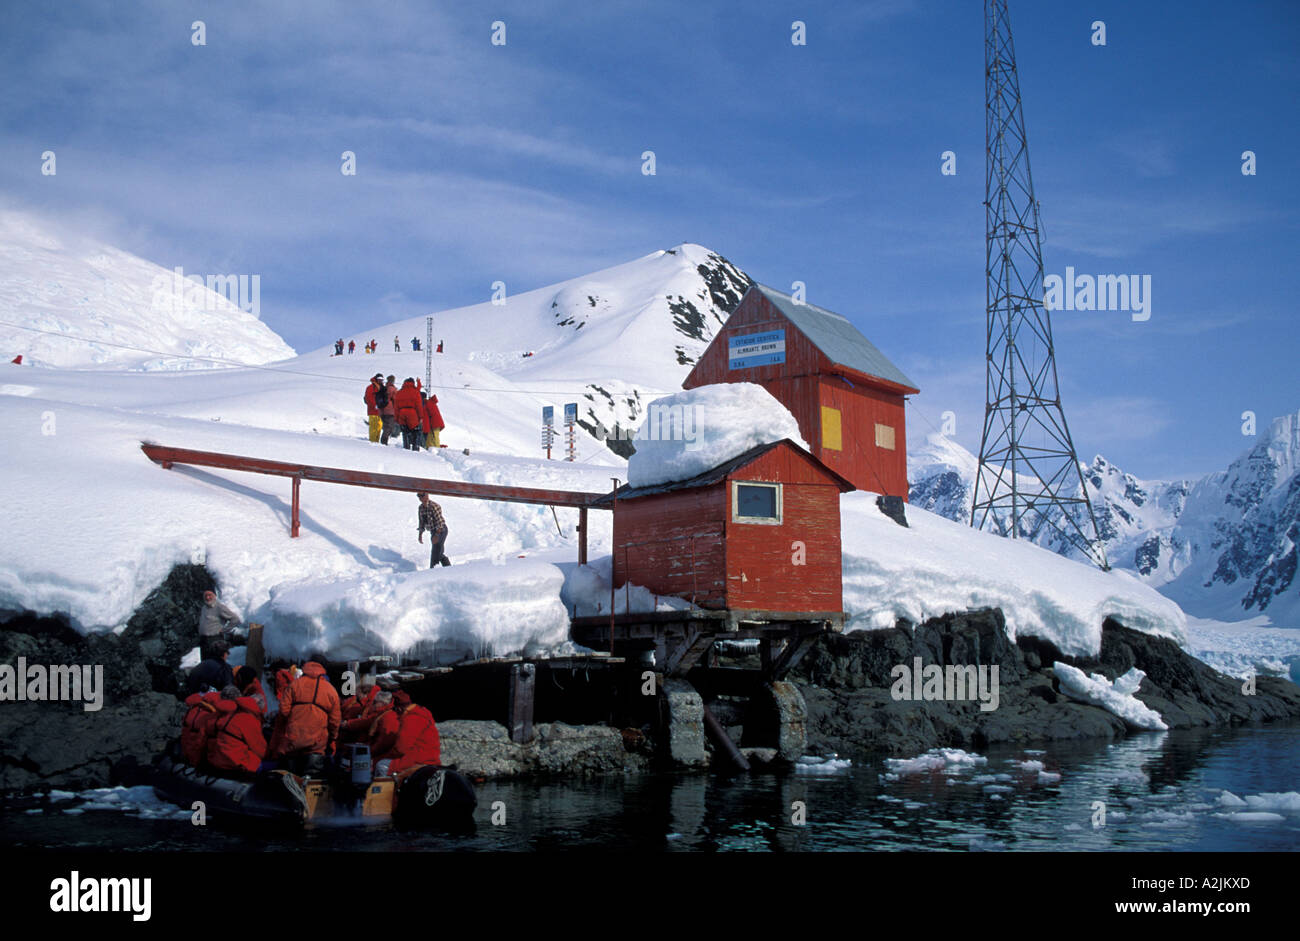 Antarktis, Antartic Halbinsel, argentinische Forschungsstation "Aldirante Brown" mit Touristen in roten Jacken. Stockfoto